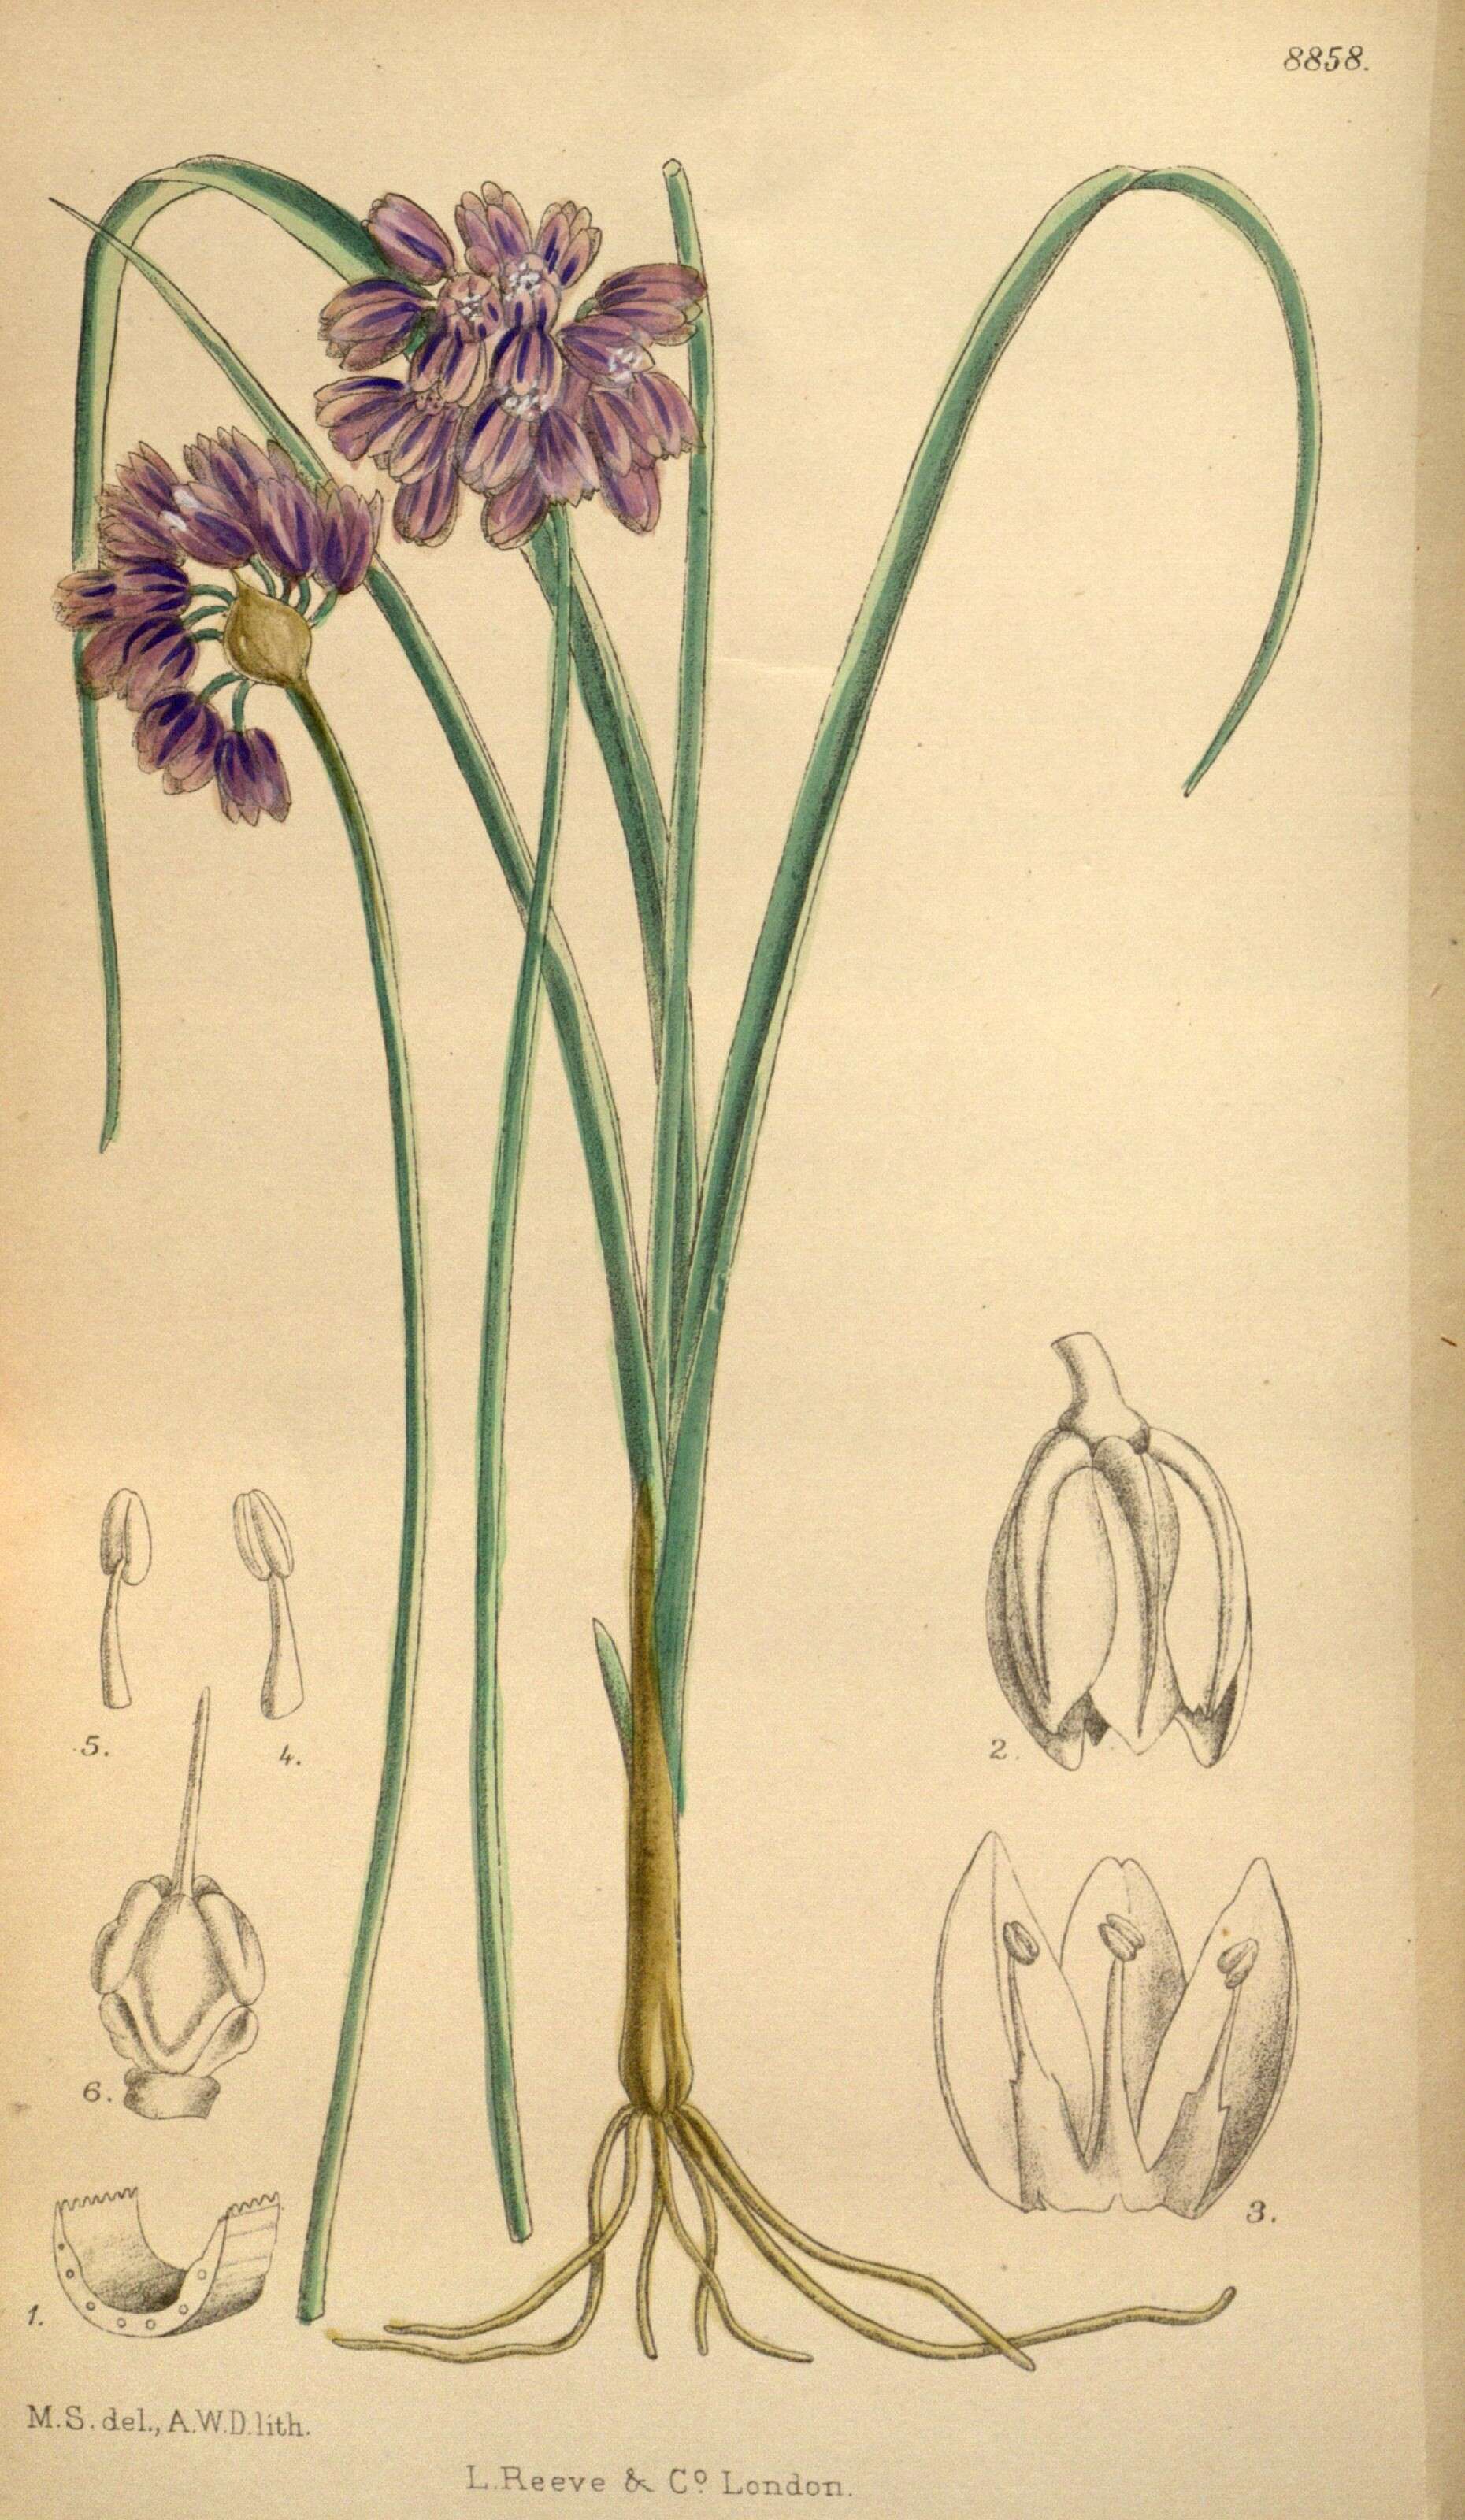 Image of Allium sikkimense Baker